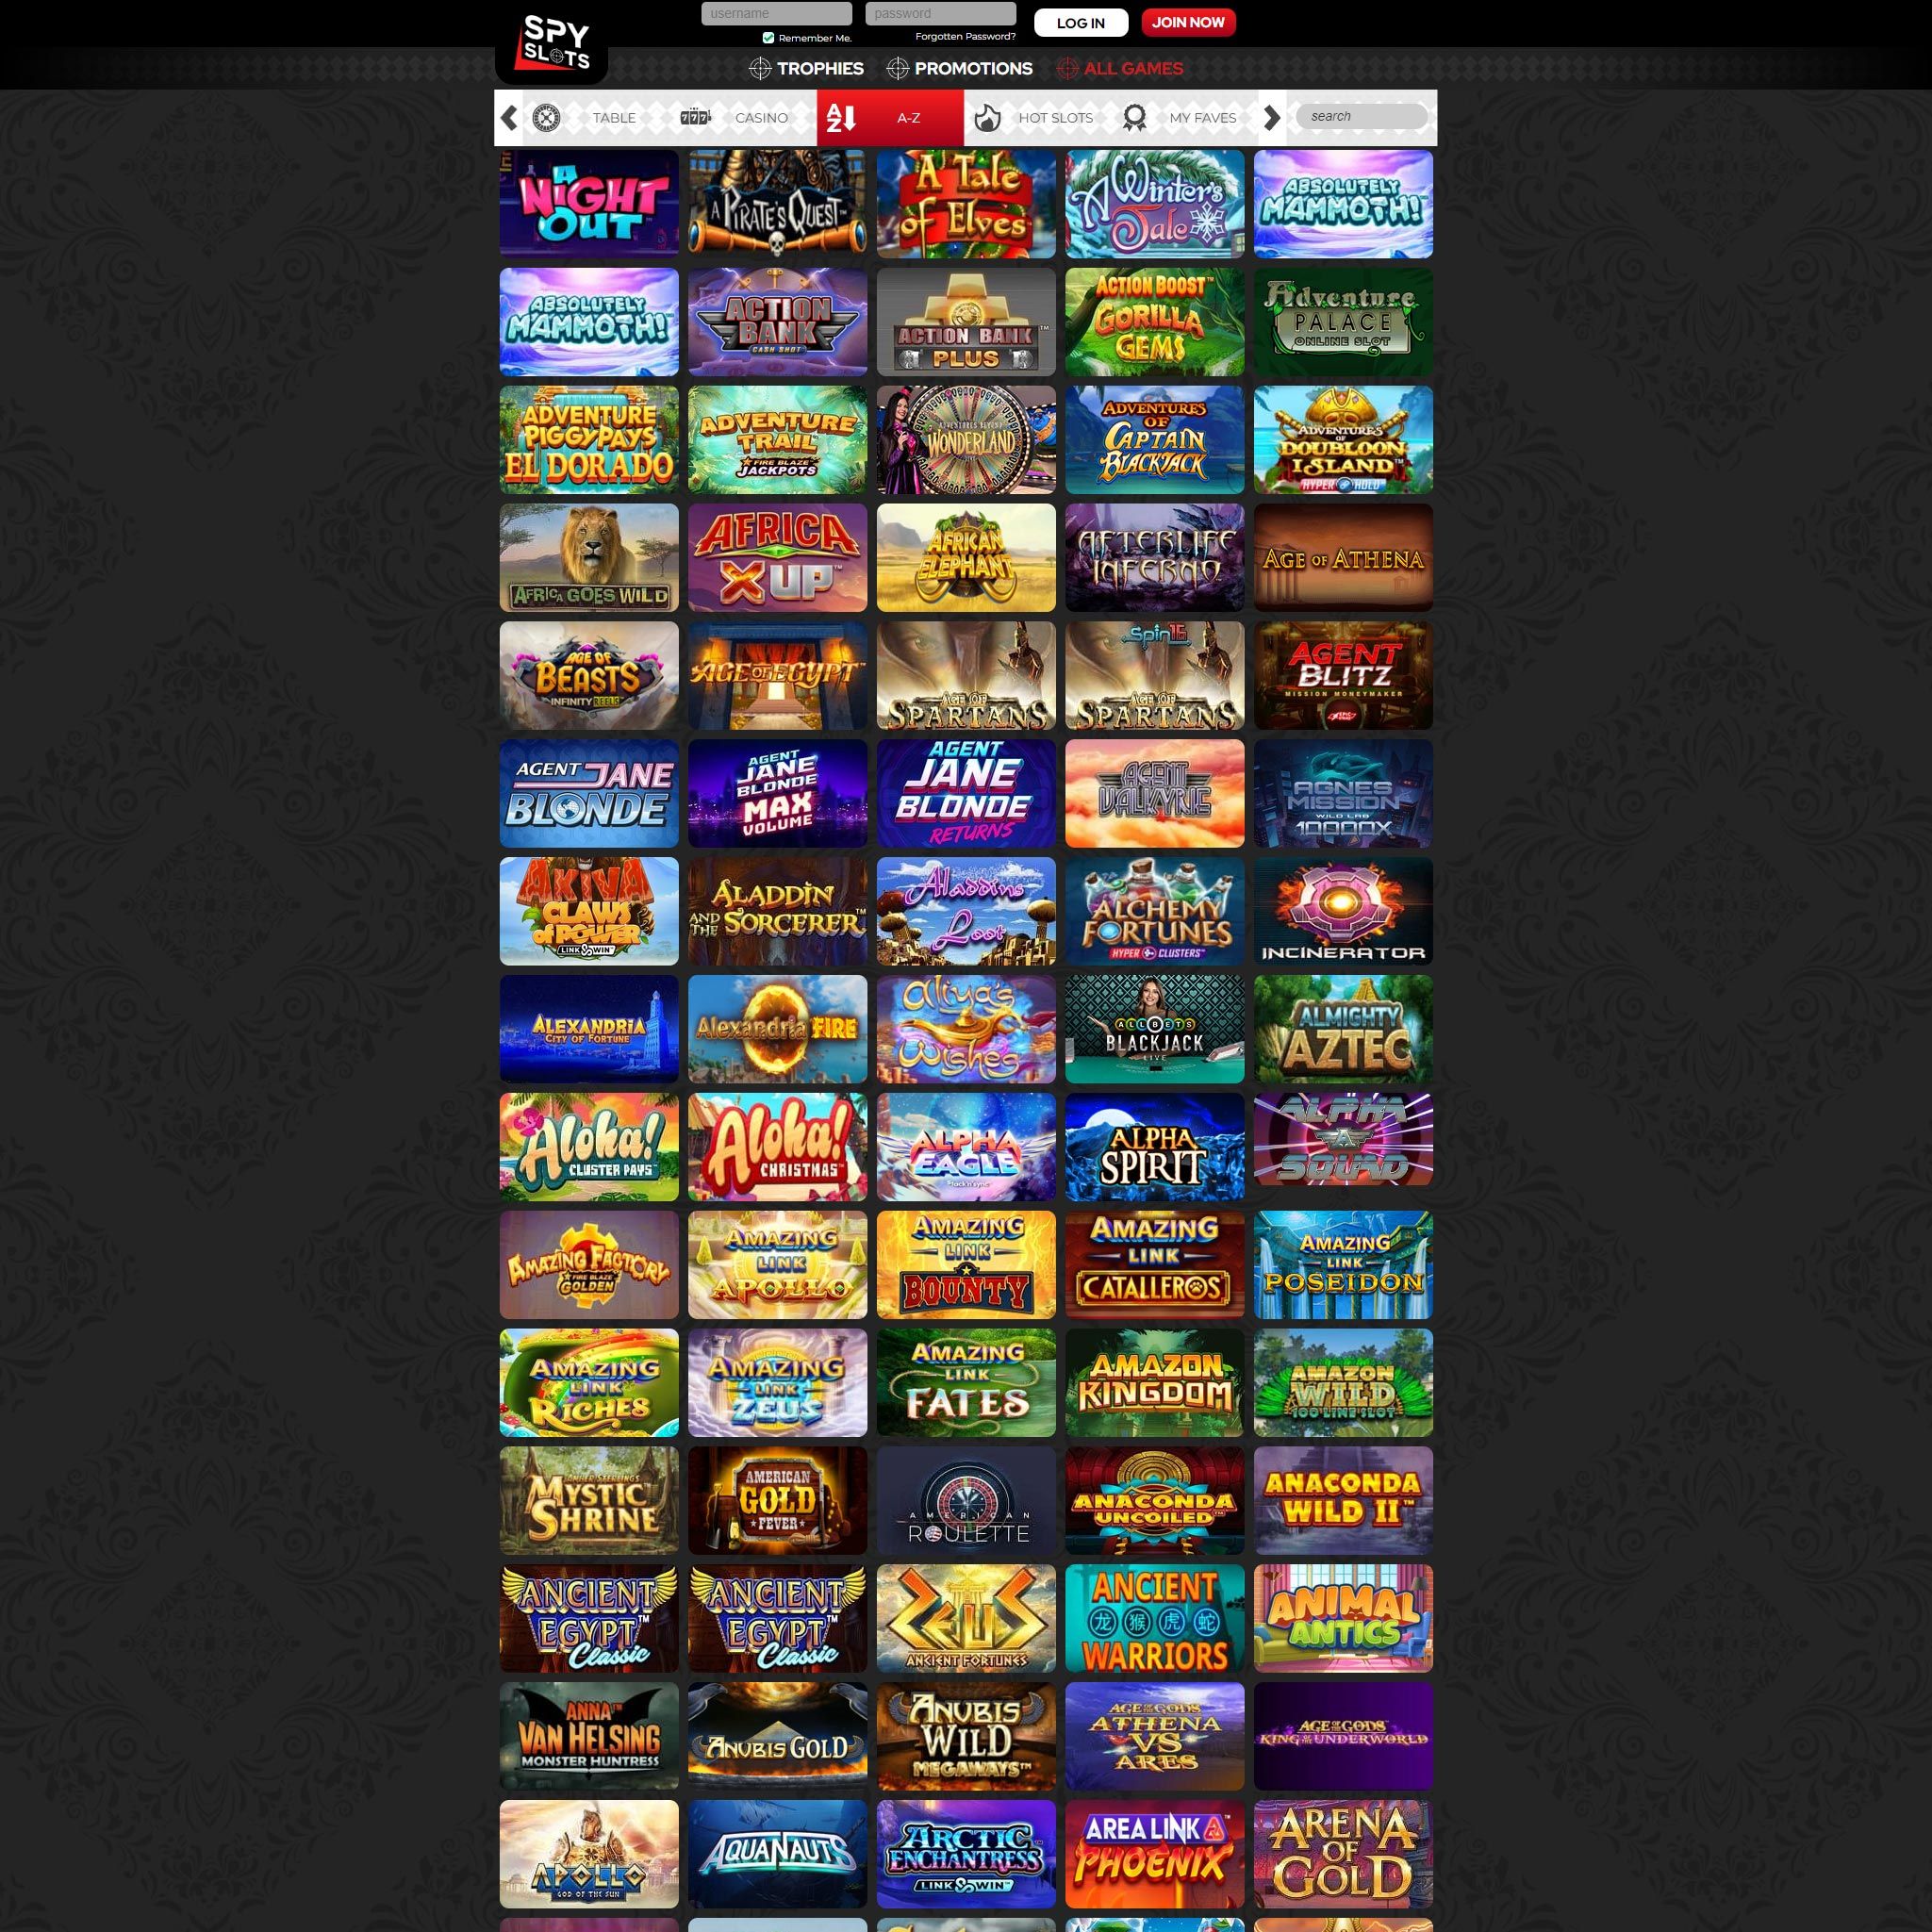 Spy Slots Casino full games catalogue